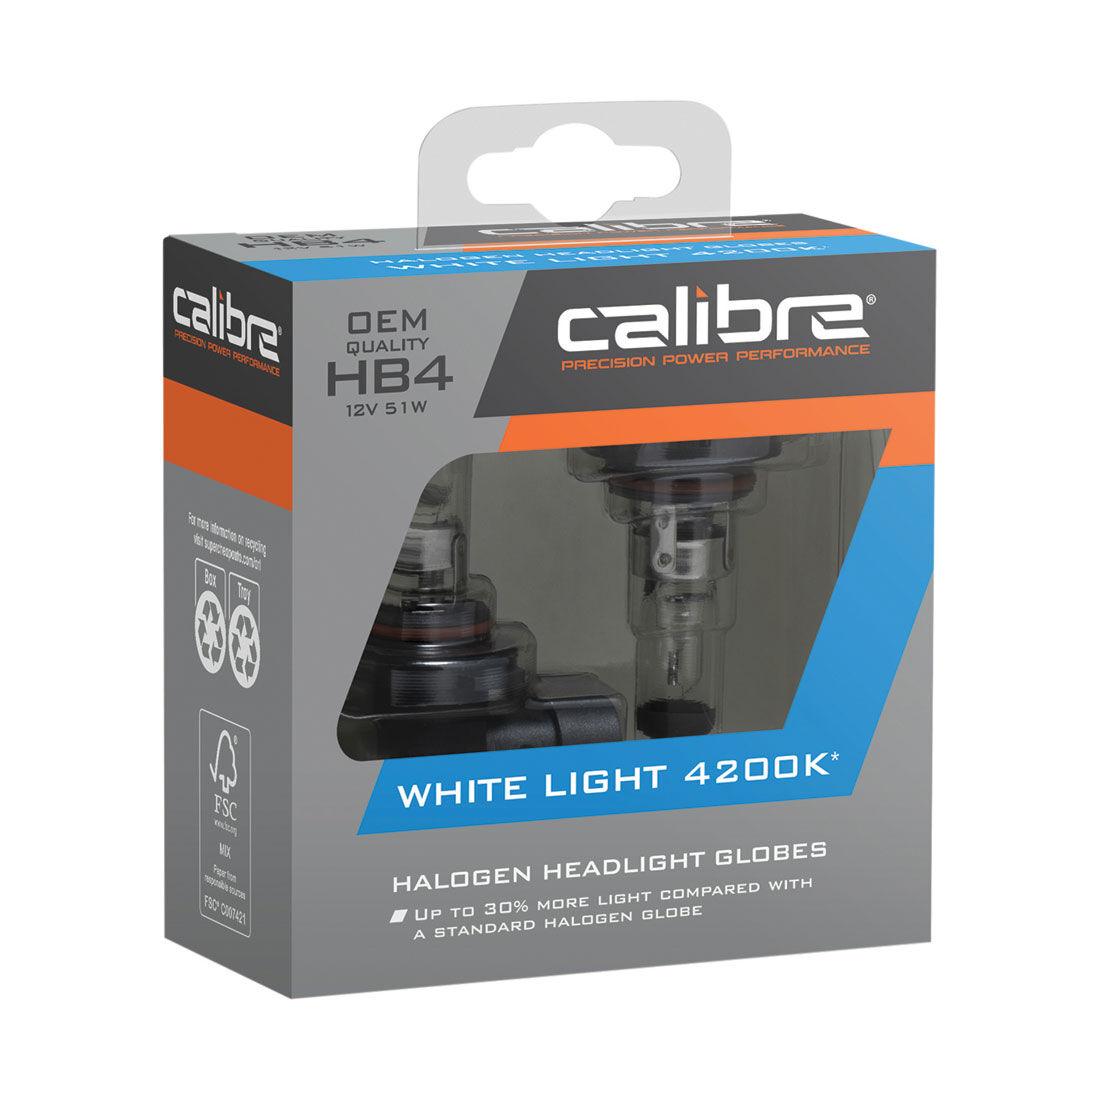 Calibre White Light 4200K Headlight Globes - HB4, 12V 51W, CA4200HB4, , scaau_hi-res